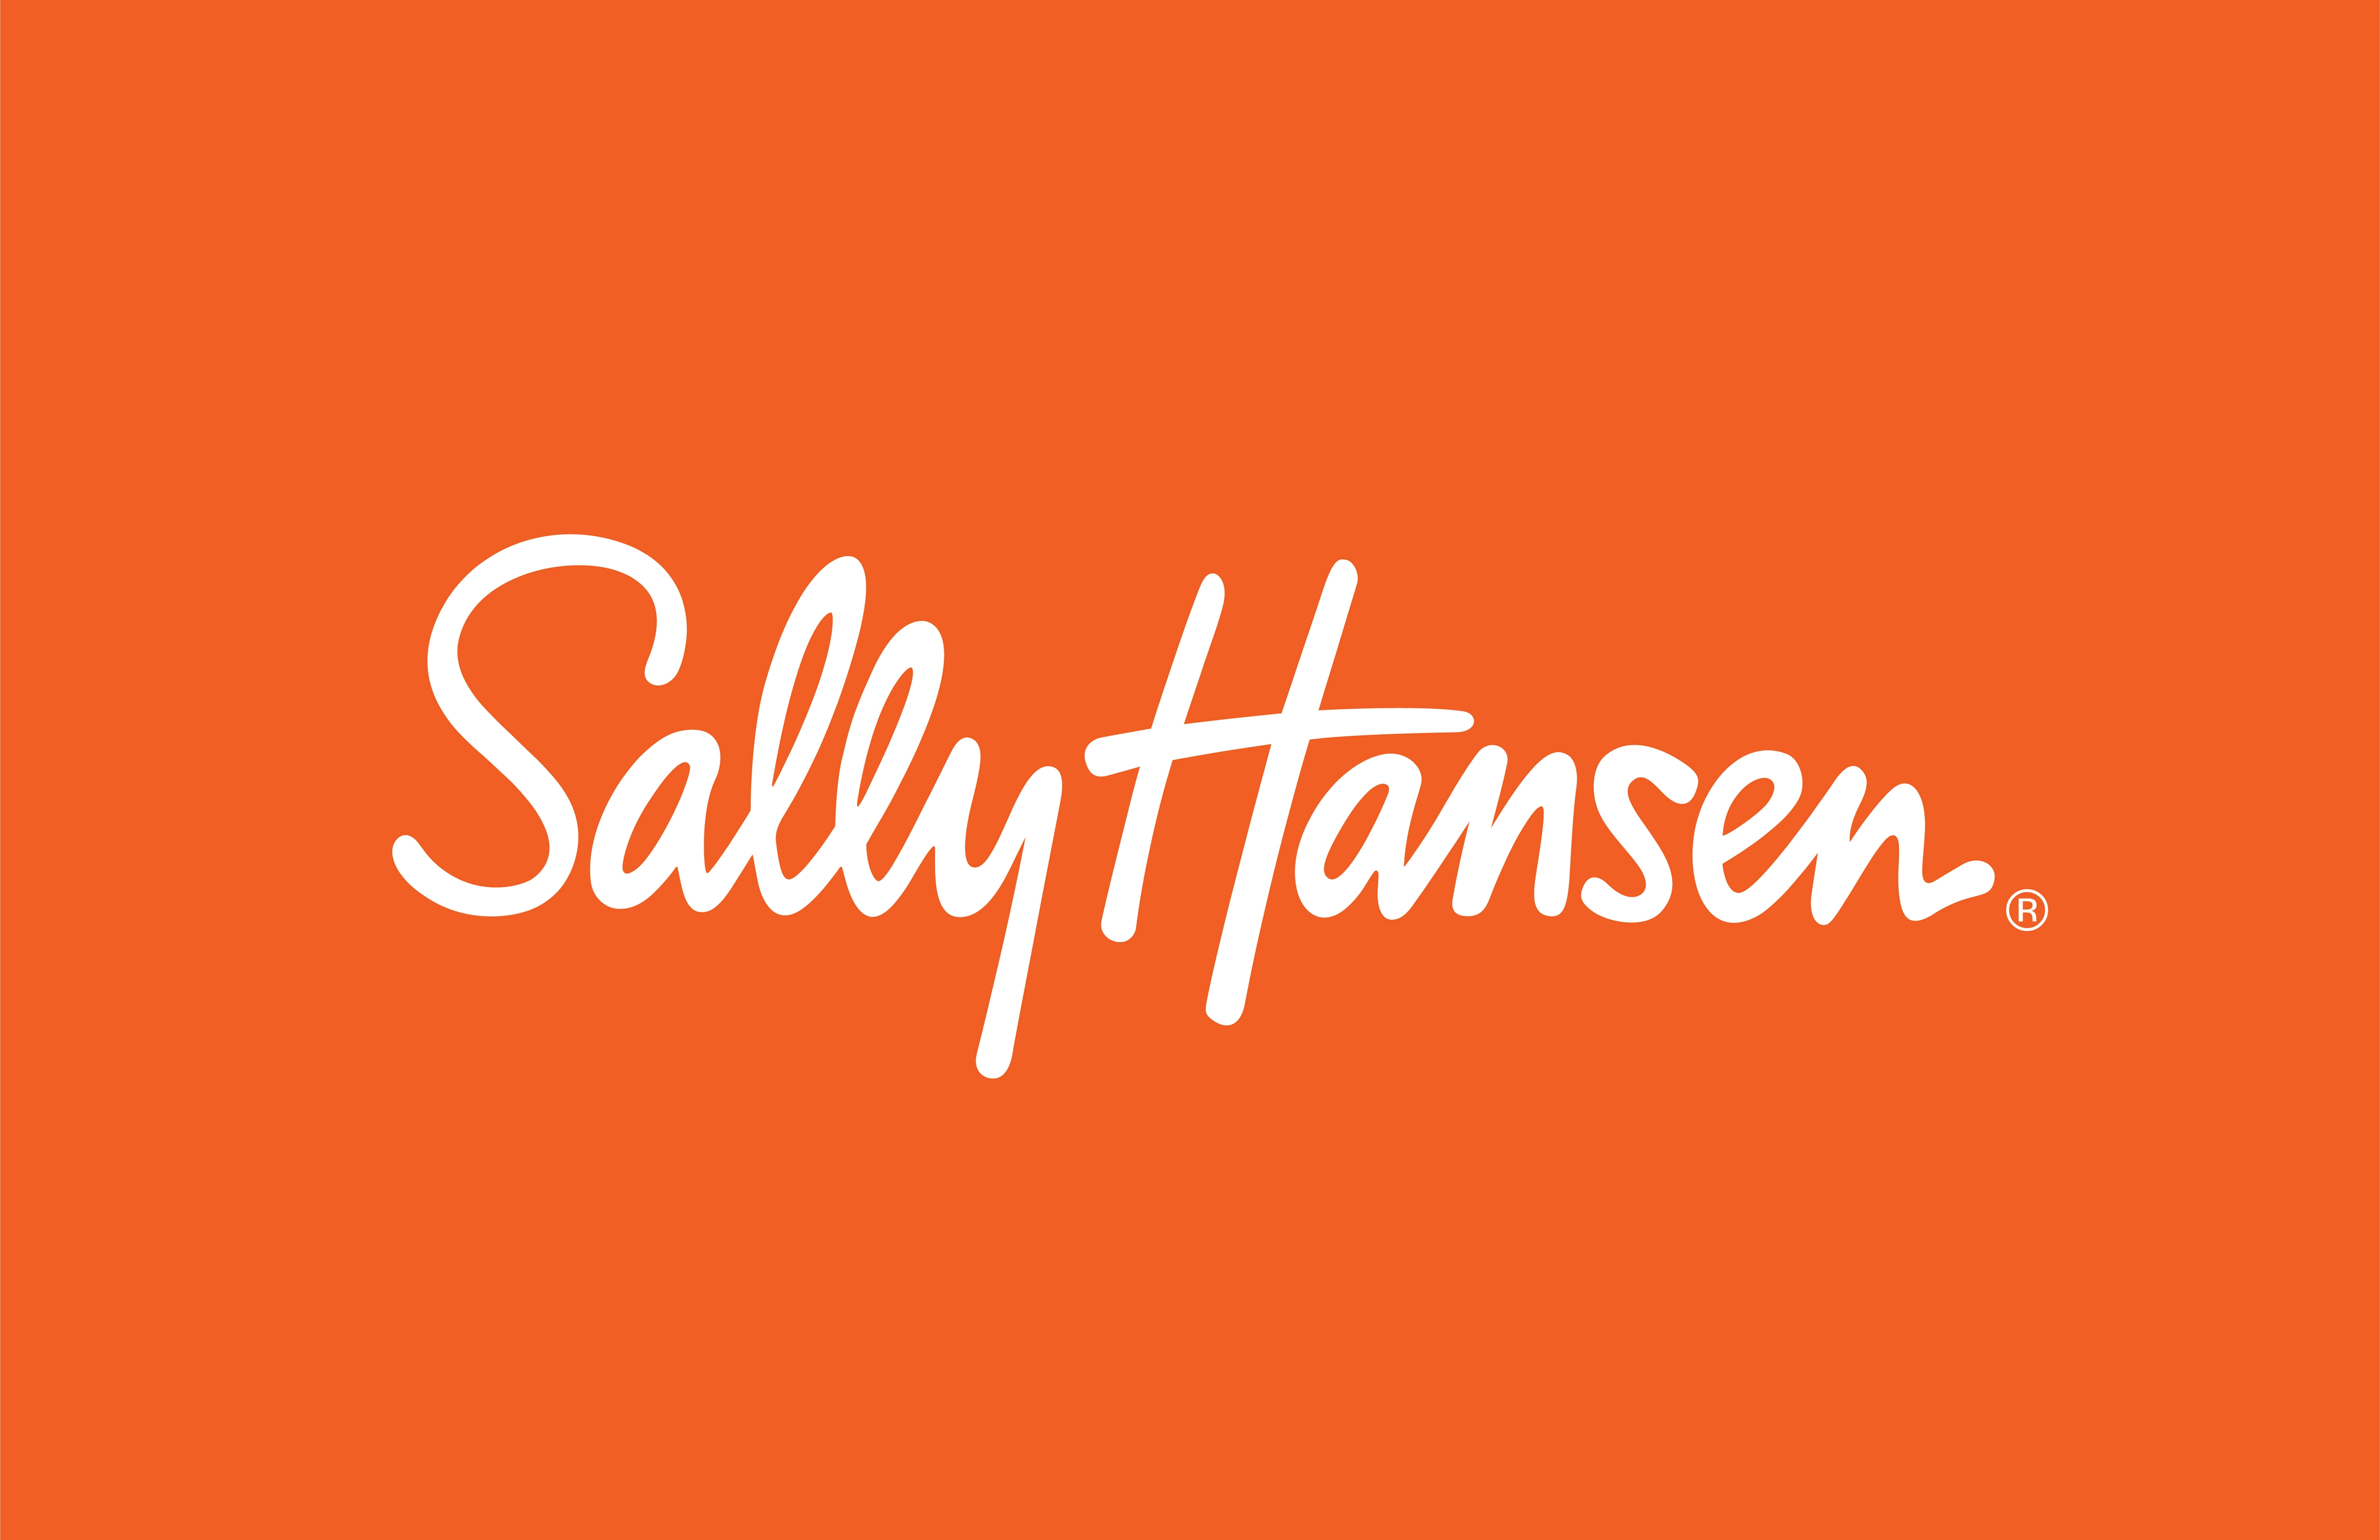 Sally Hansen Hard as Nails® Natural Tint, Nail Strengthener, 0.45 fl oz, Nail Hardener - image 5 of 5